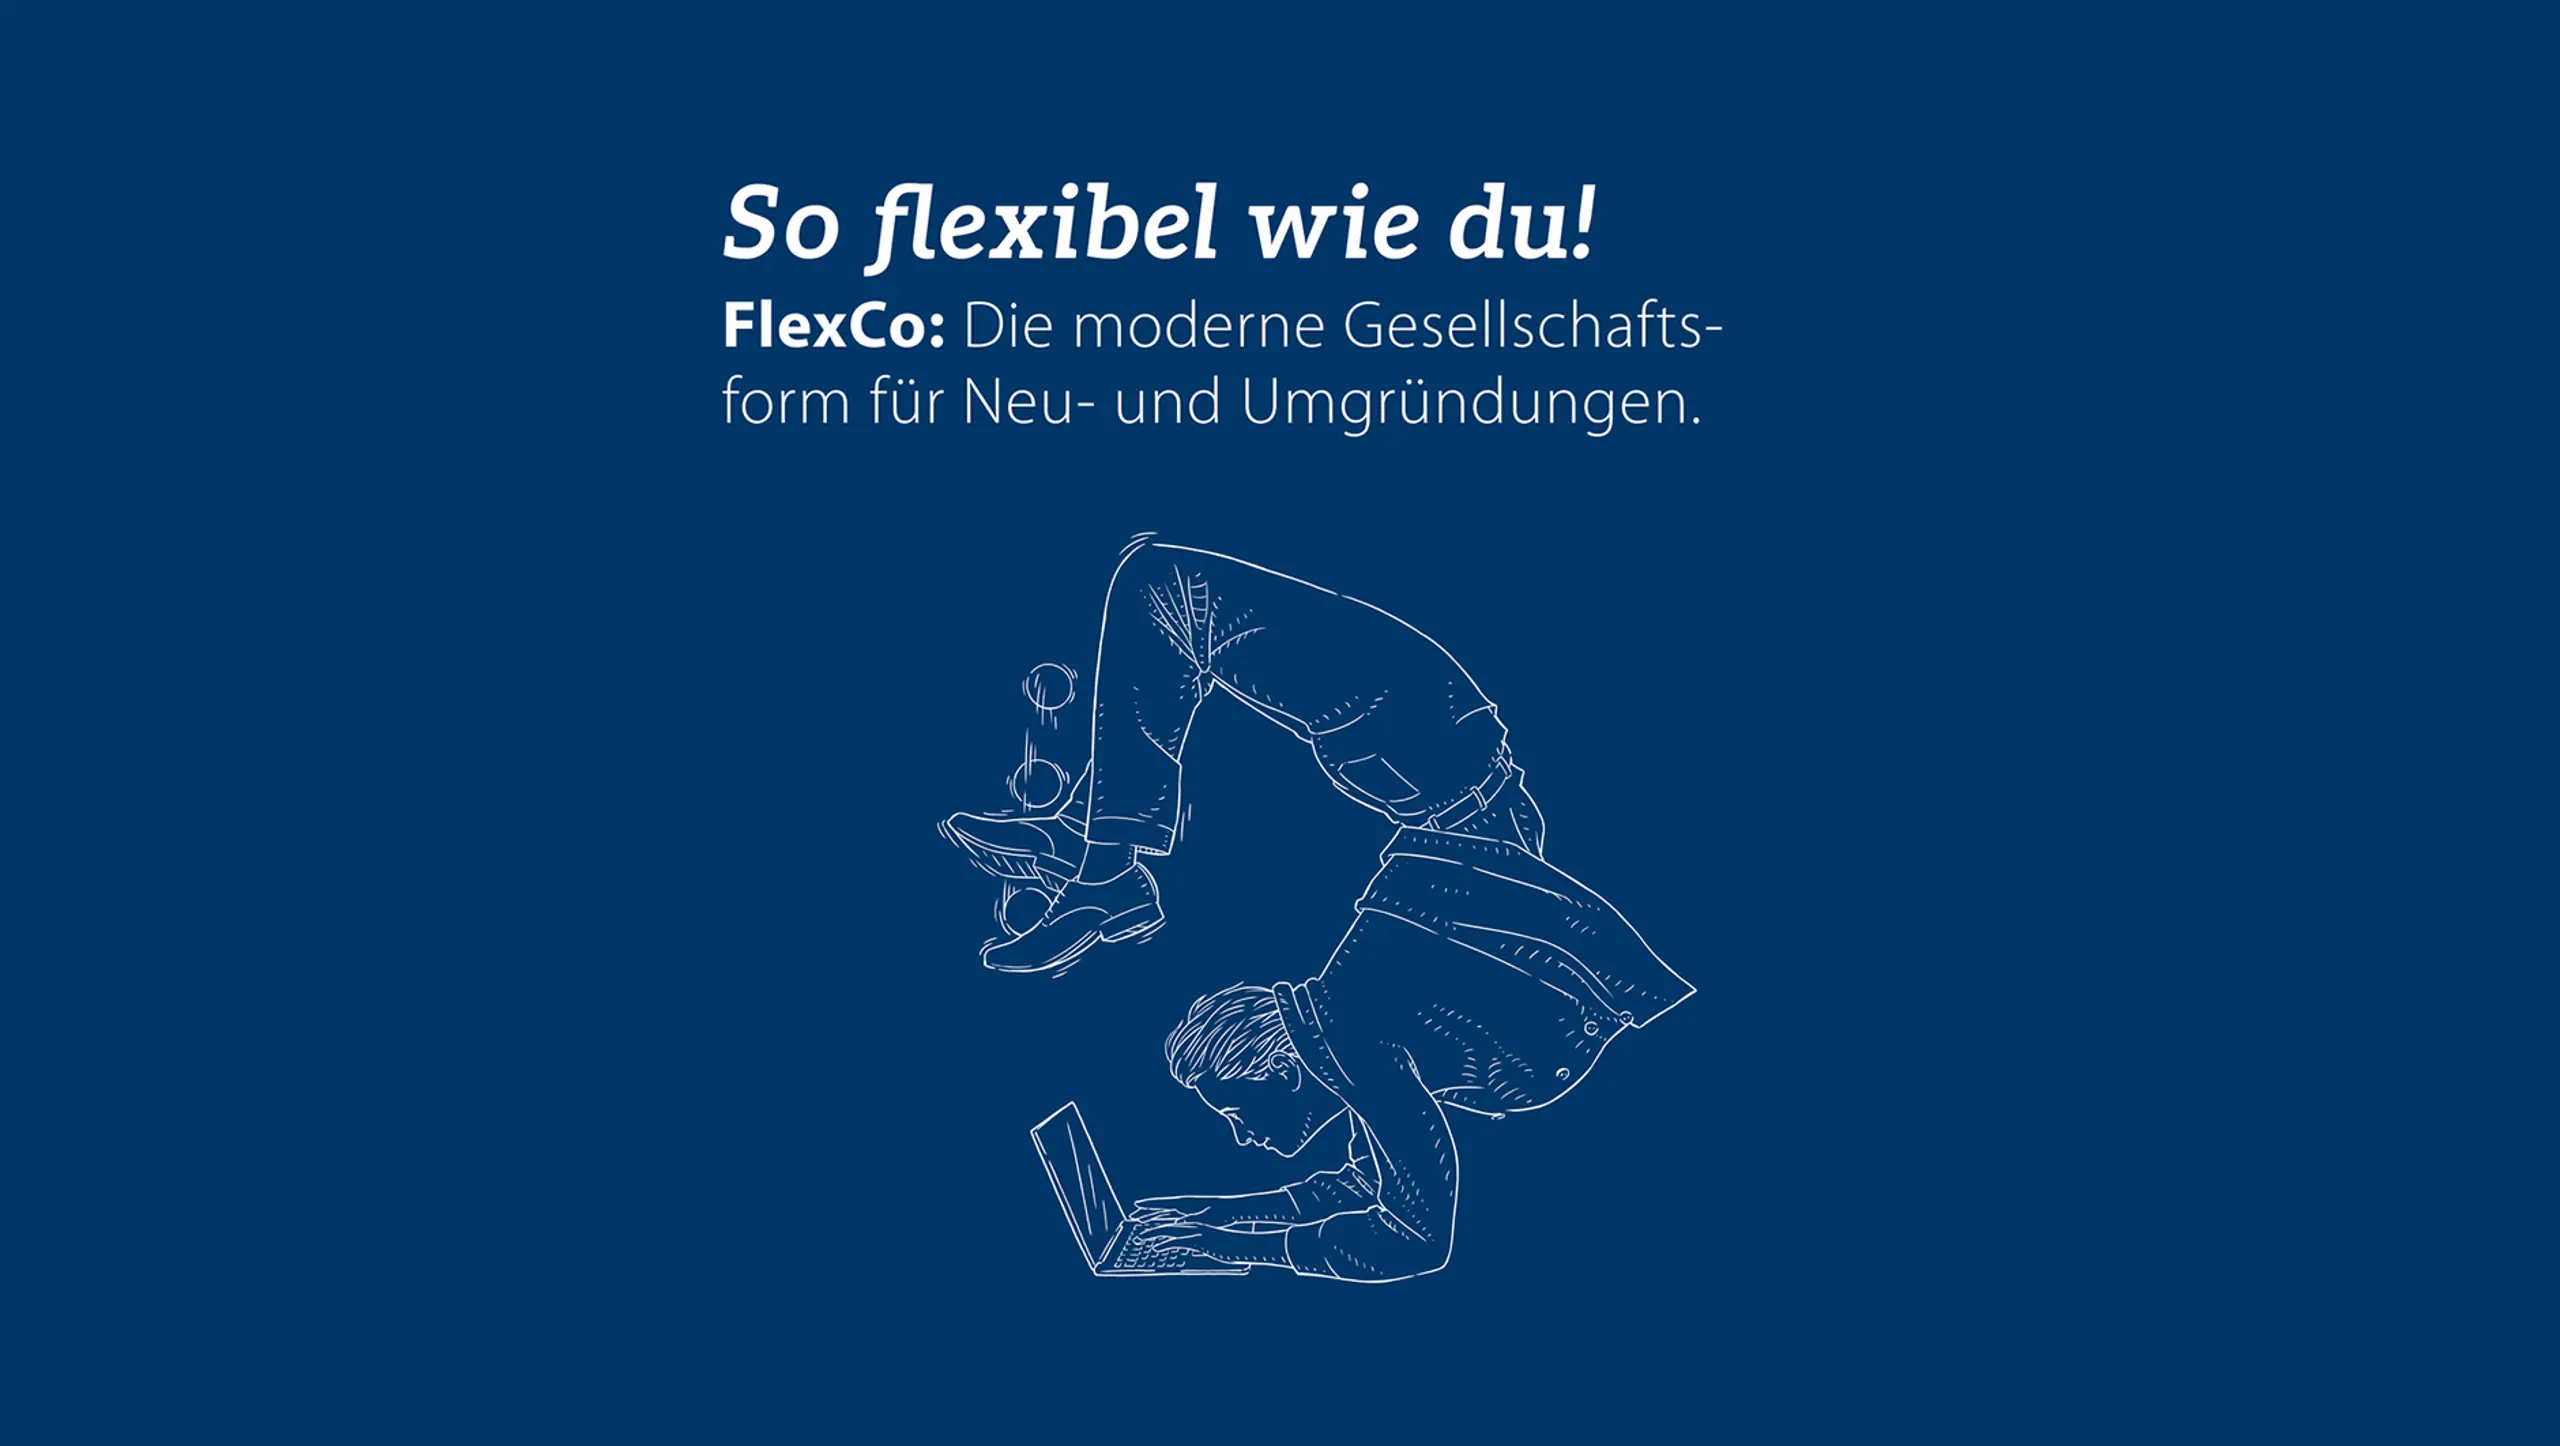 FlexCo – Das bringt die neue Gesellschaftsform